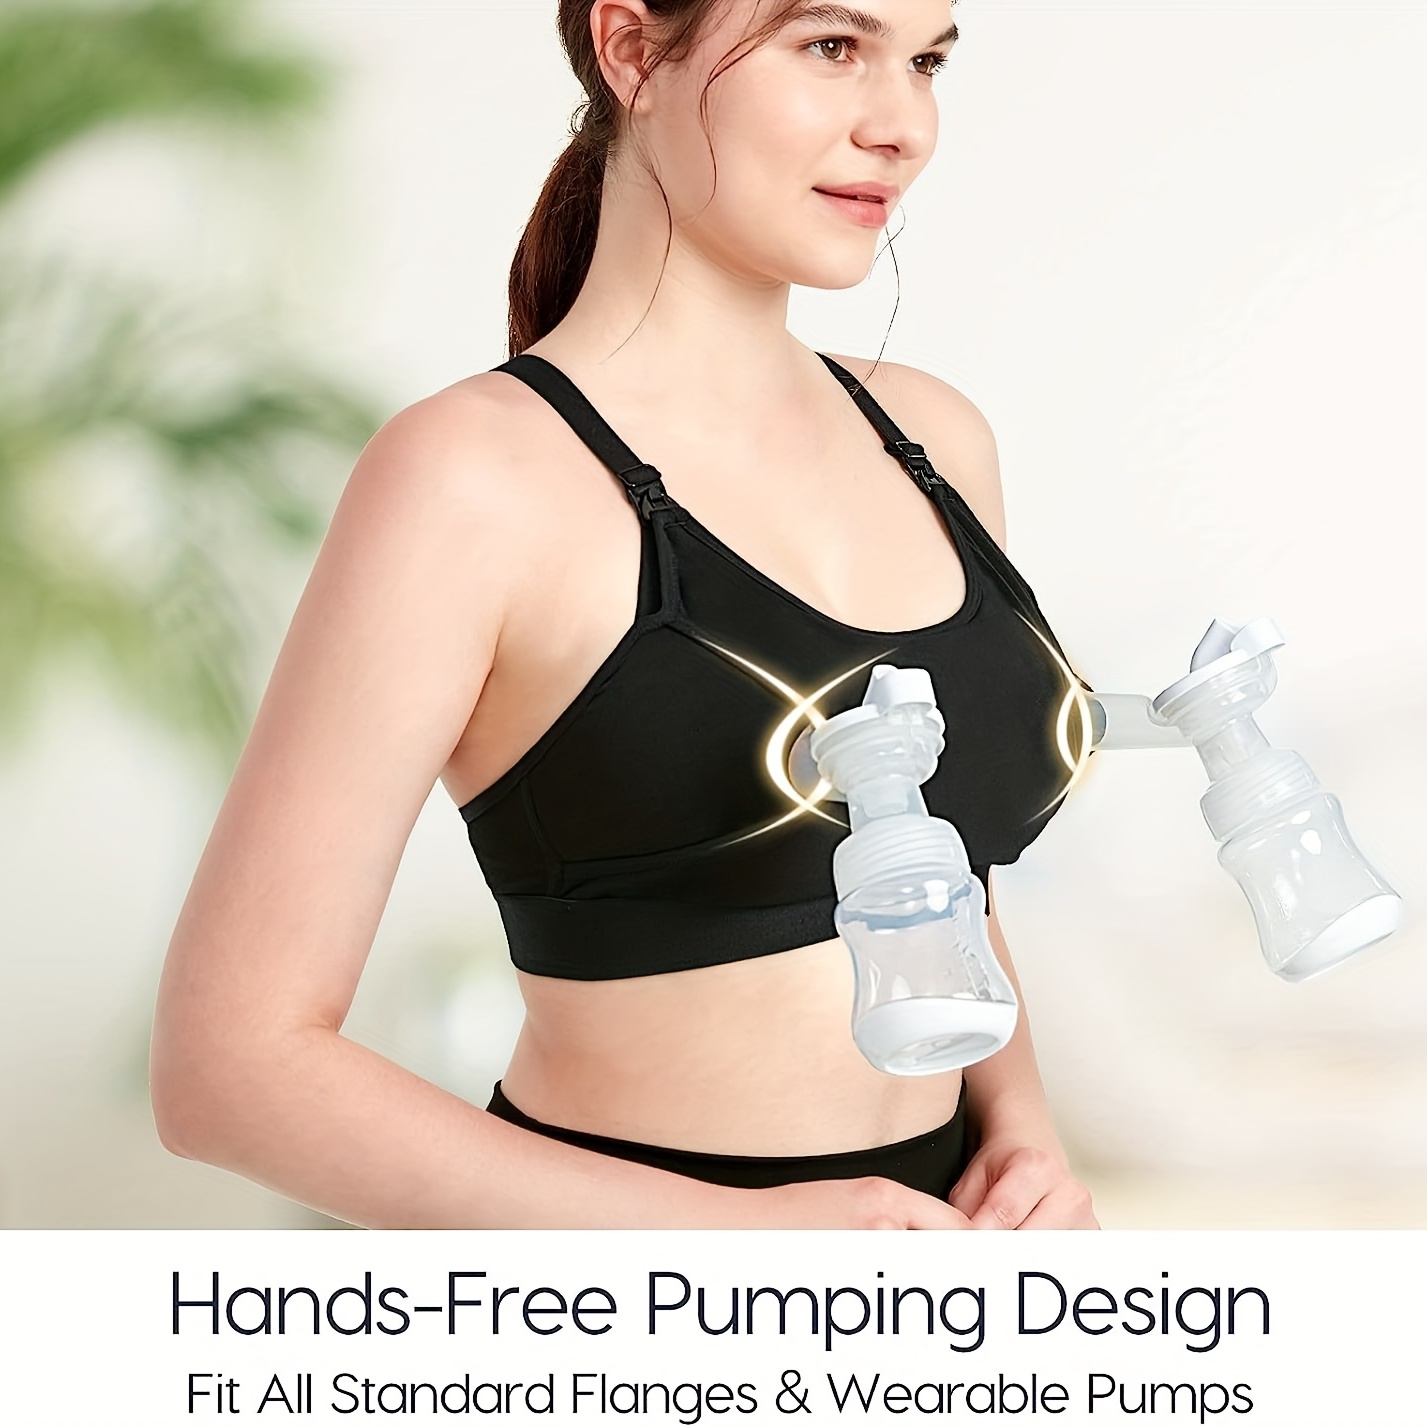 Brassière de pompage mains libres, soutien-gorge réglable pour tenir la  pompe à sein et allaiter